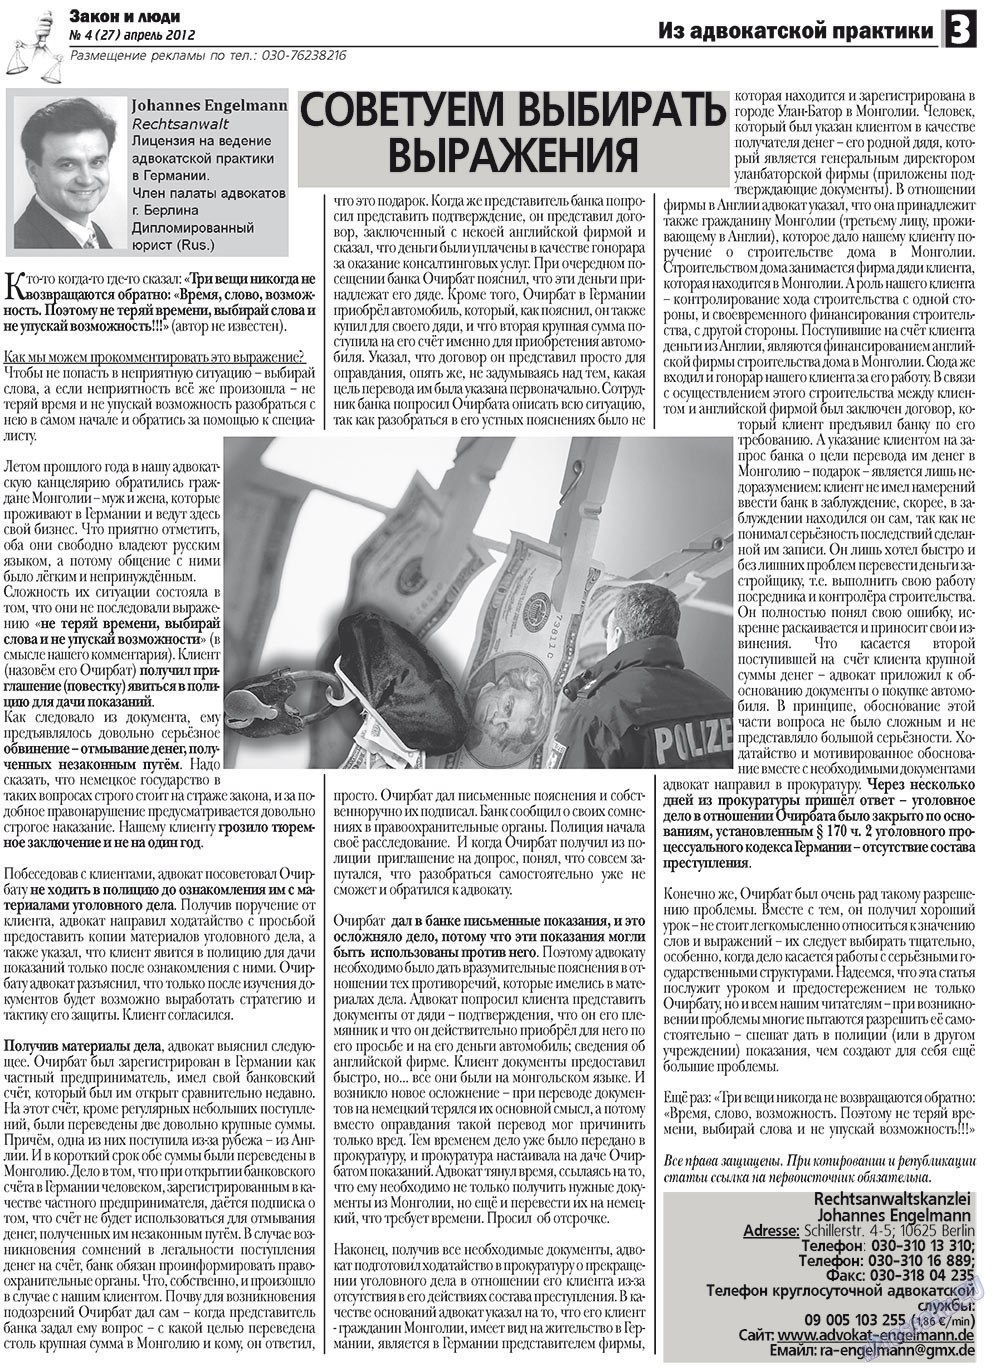 Закон и люди, газета. 2012 №4 стр.3